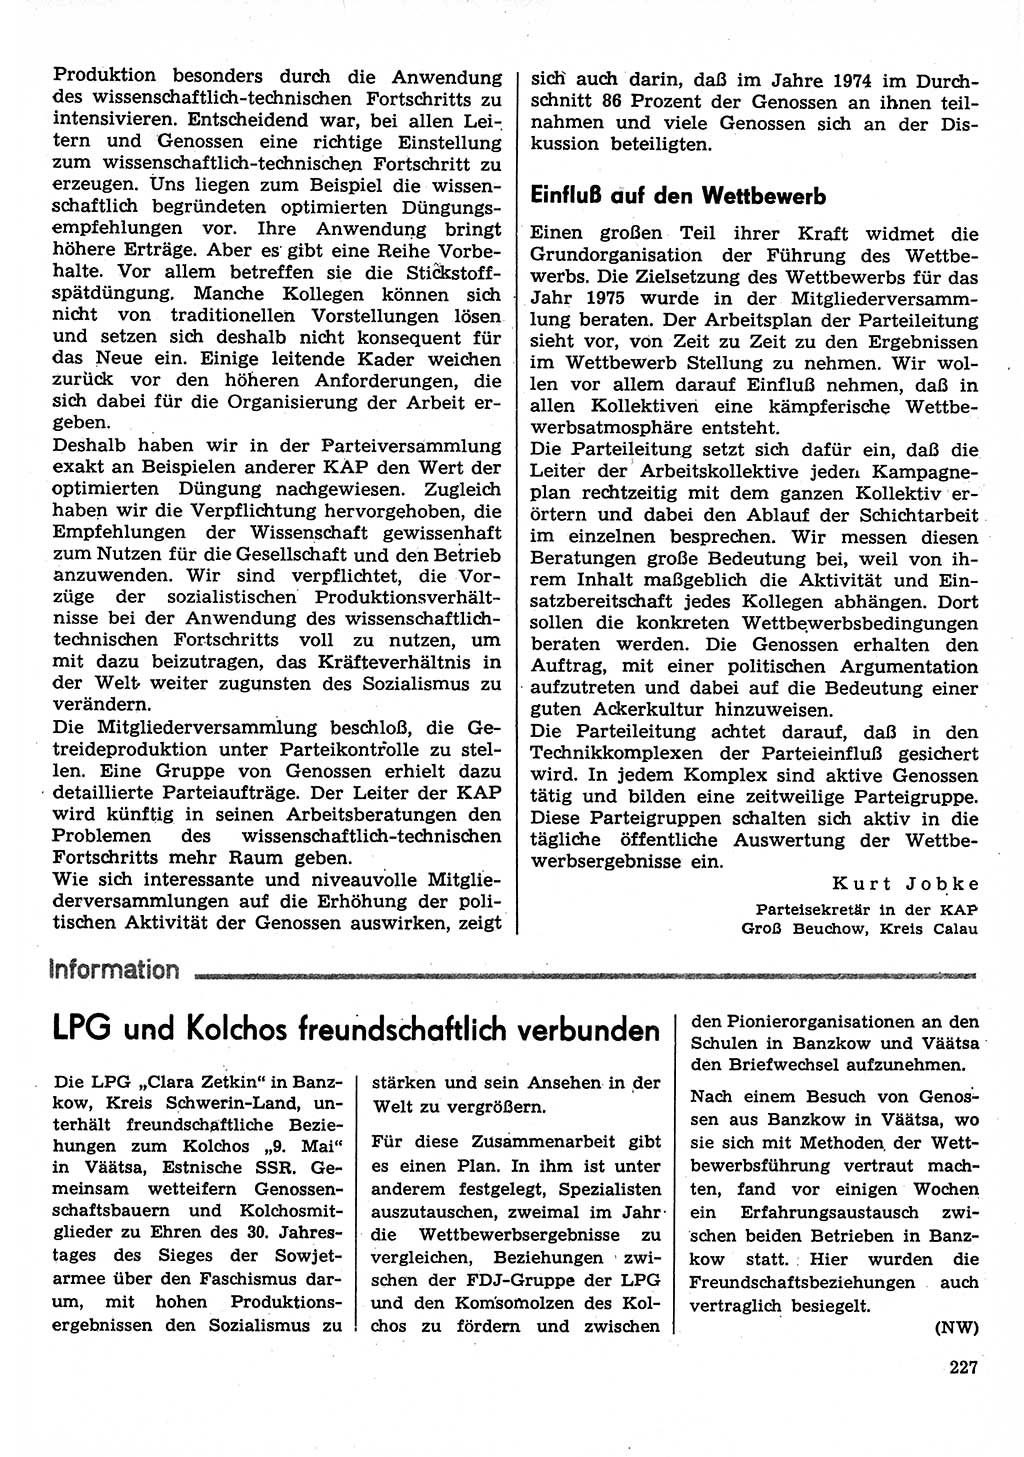 Neuer Weg (NW), Organ des Zentralkomitees (ZK) der SED (Sozialistische Einheitspartei Deutschlands) für Fragen des Parteilebens, 30. Jahrgang [Deutsche Demokratische Republik (DDR)] 1975, Seite 227 (NW ZK SED DDR 1975, S. 227)